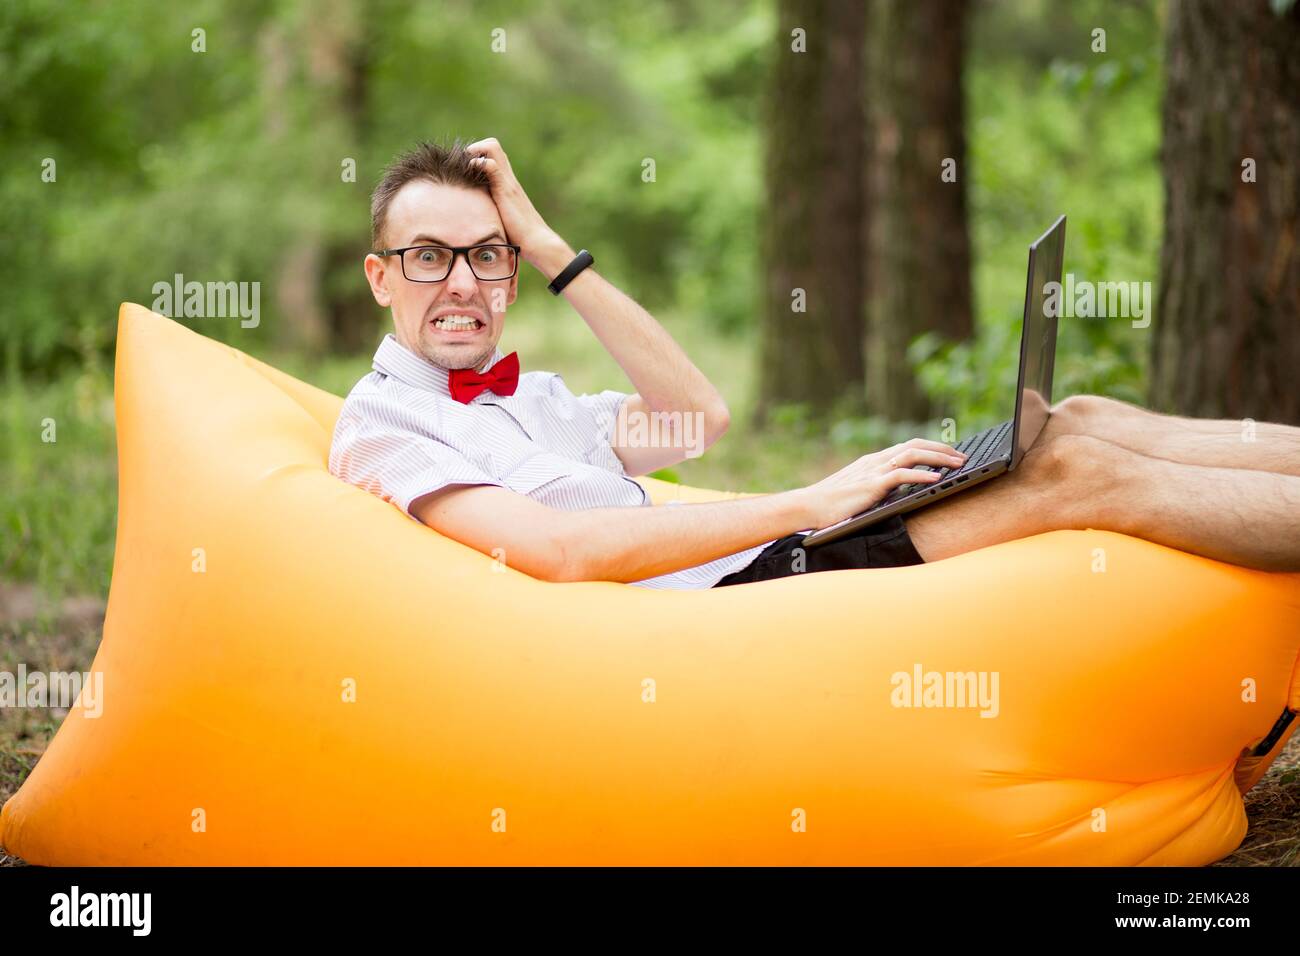 Erschrocken Student in Brille mit Laptop-Computer liegt auf aufblasbare Matratze im Sommer Park. Bildung, Geschäft, Ausfall und Technologiekonzept Stockfoto